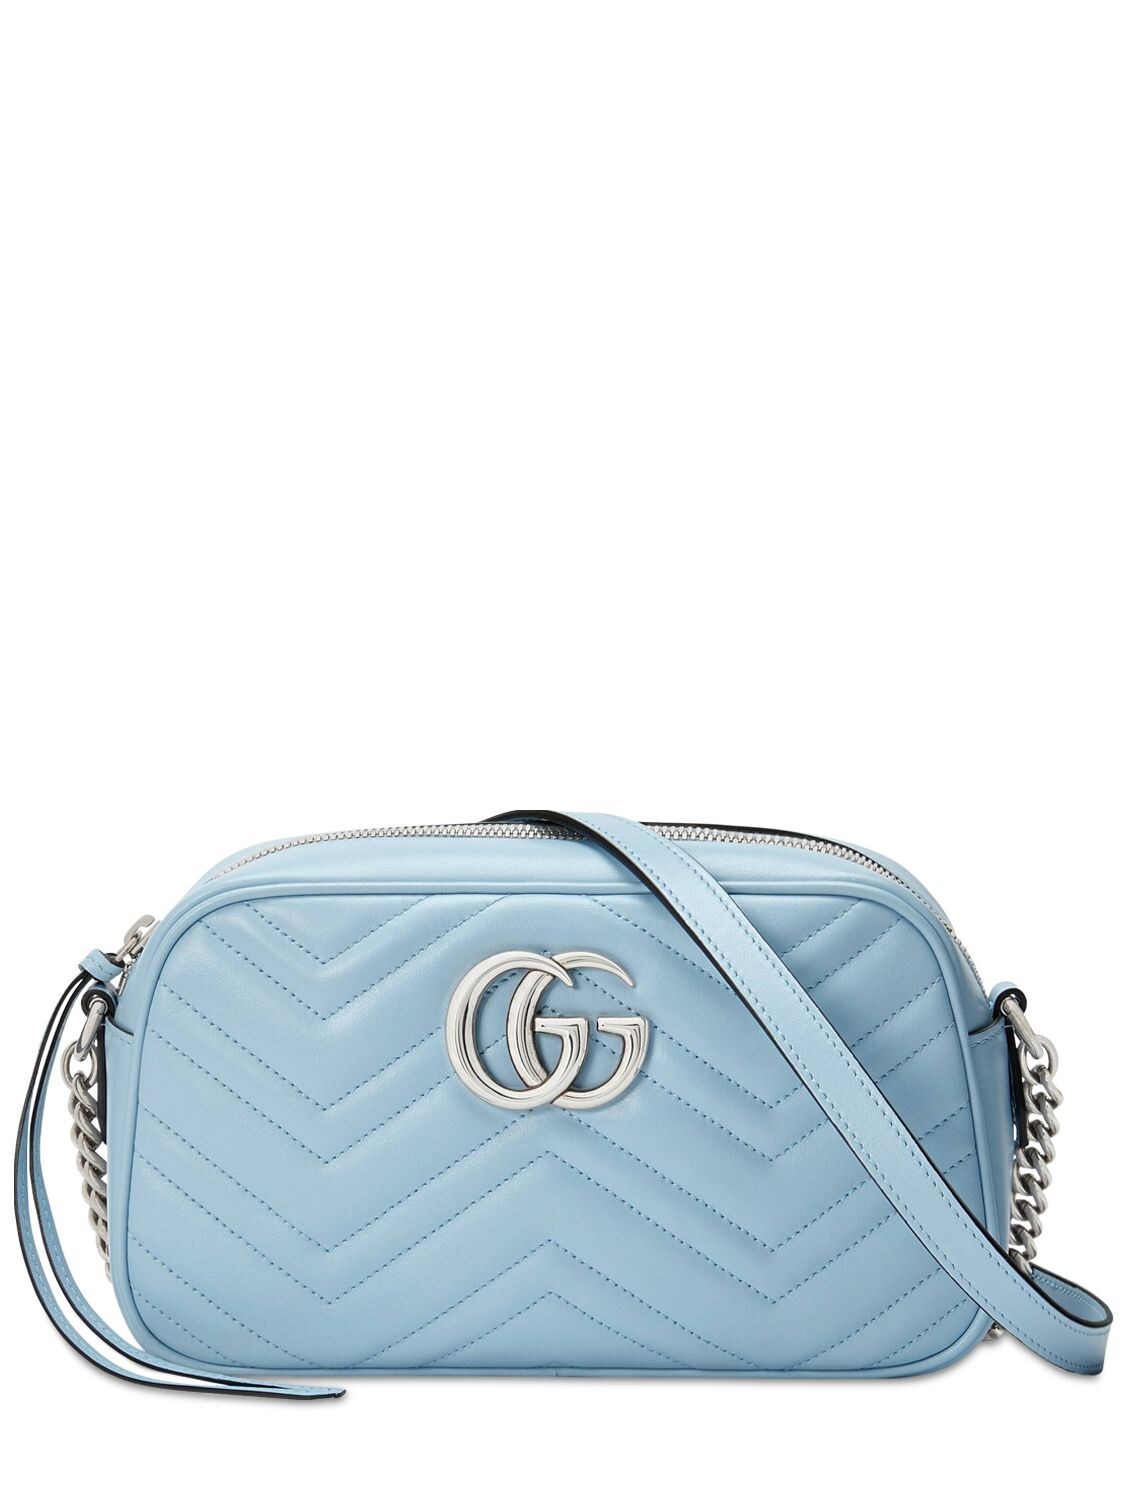 Gucci Gg Marmont Light Blue Leather Shoulder Bag